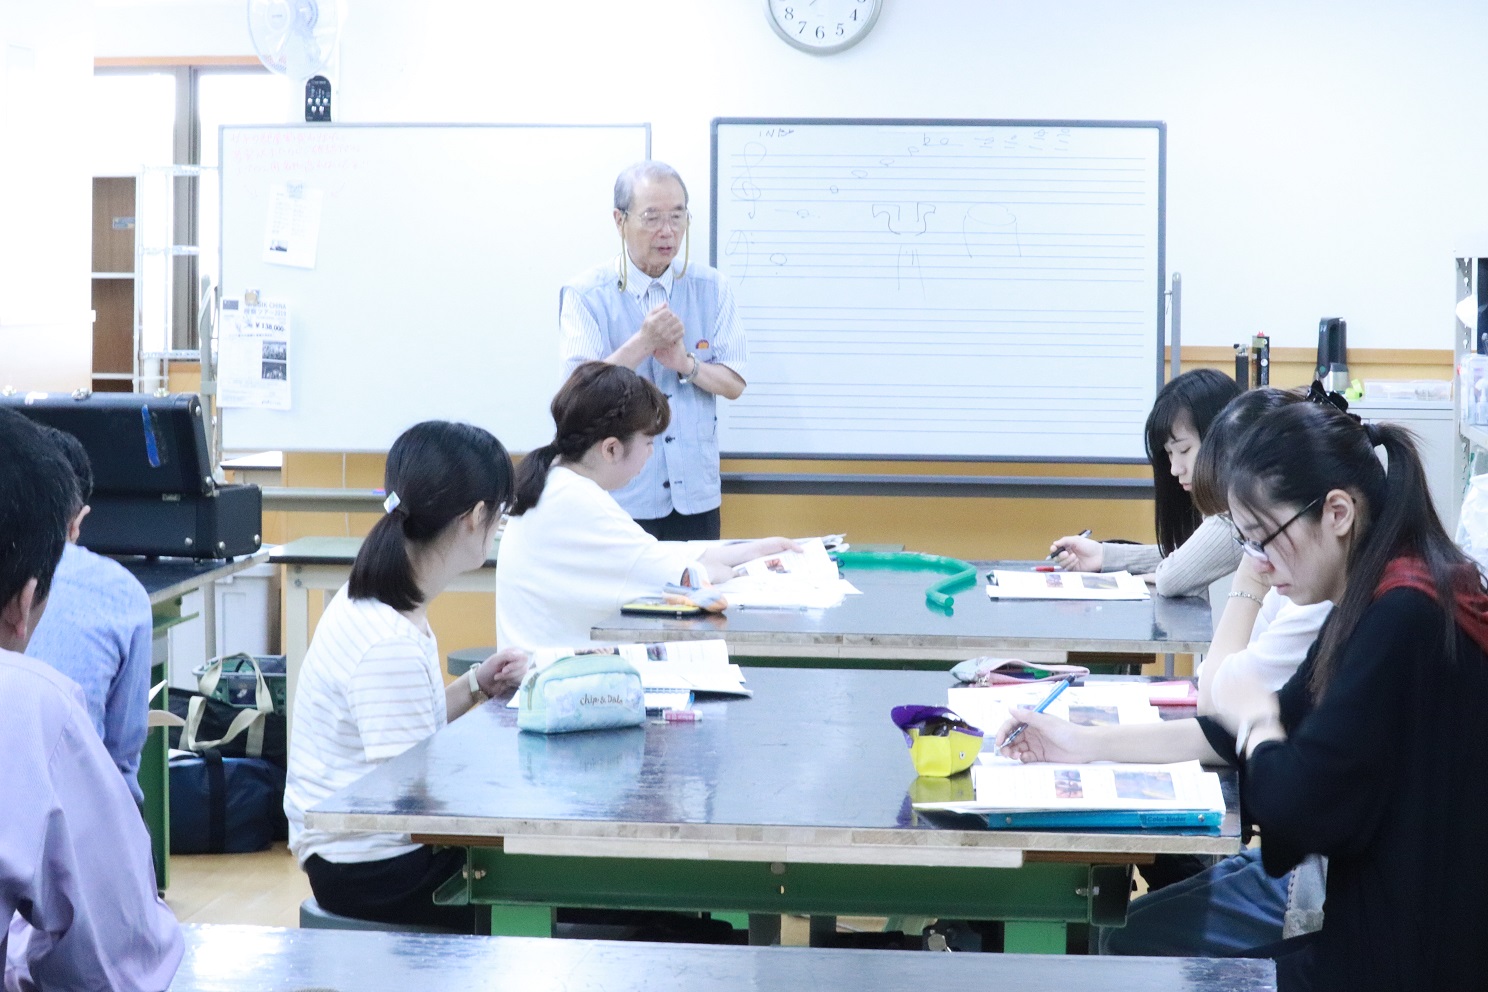 中川喜弘先生の講義を聞きメモを取る学生達